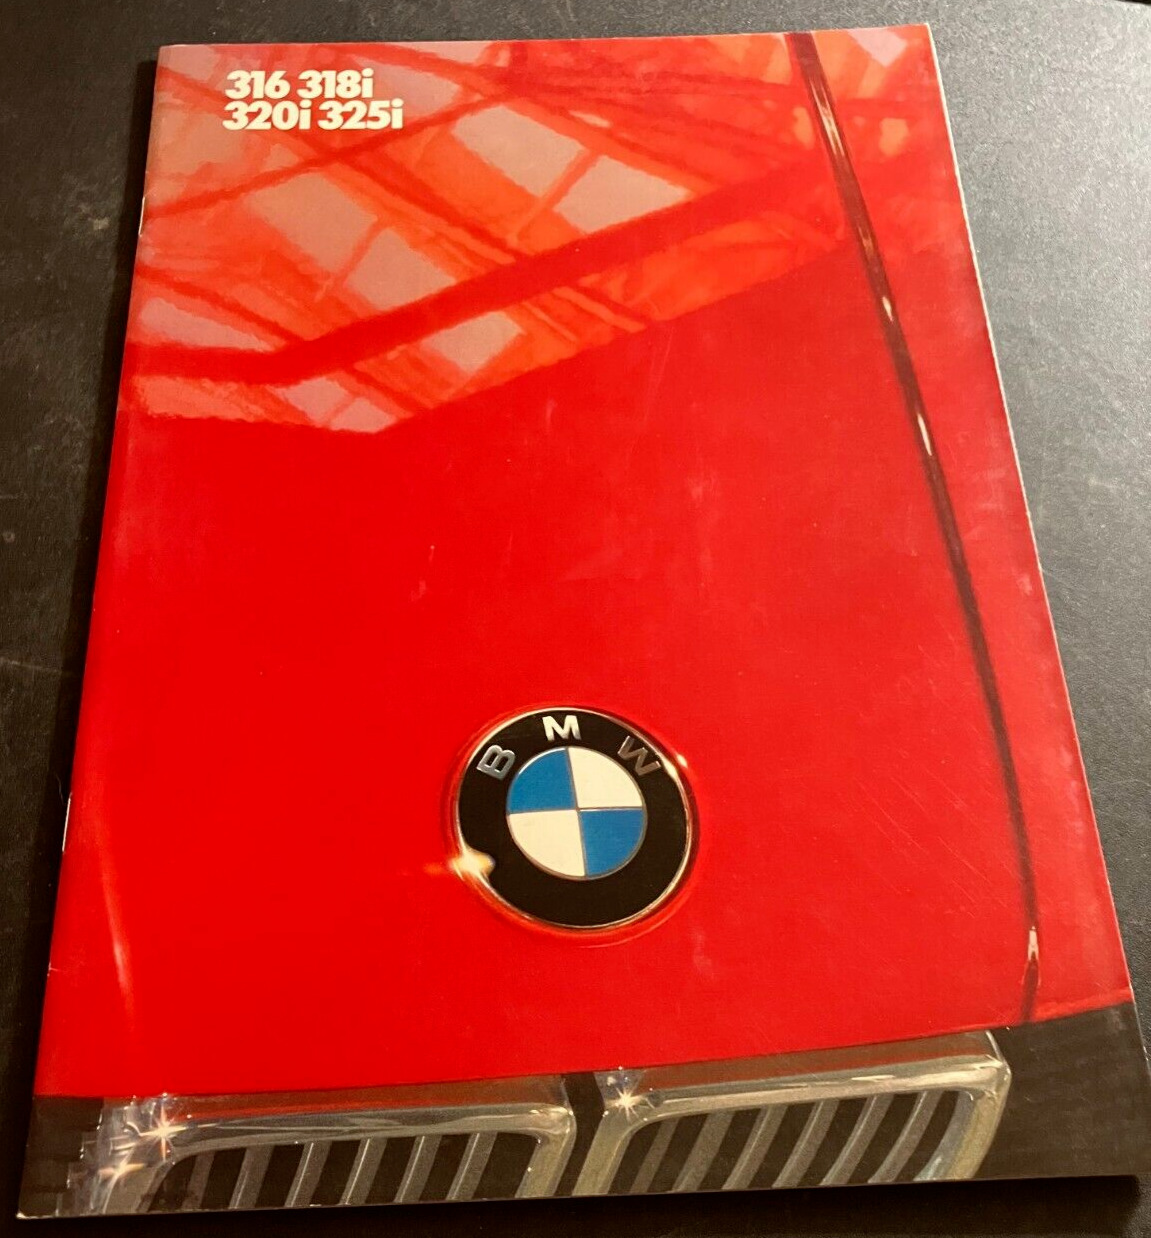 2 / 1986 BMW 316 318i 320i 325i - Vintage 34-page Dealer Sales Brochure - DUTCH